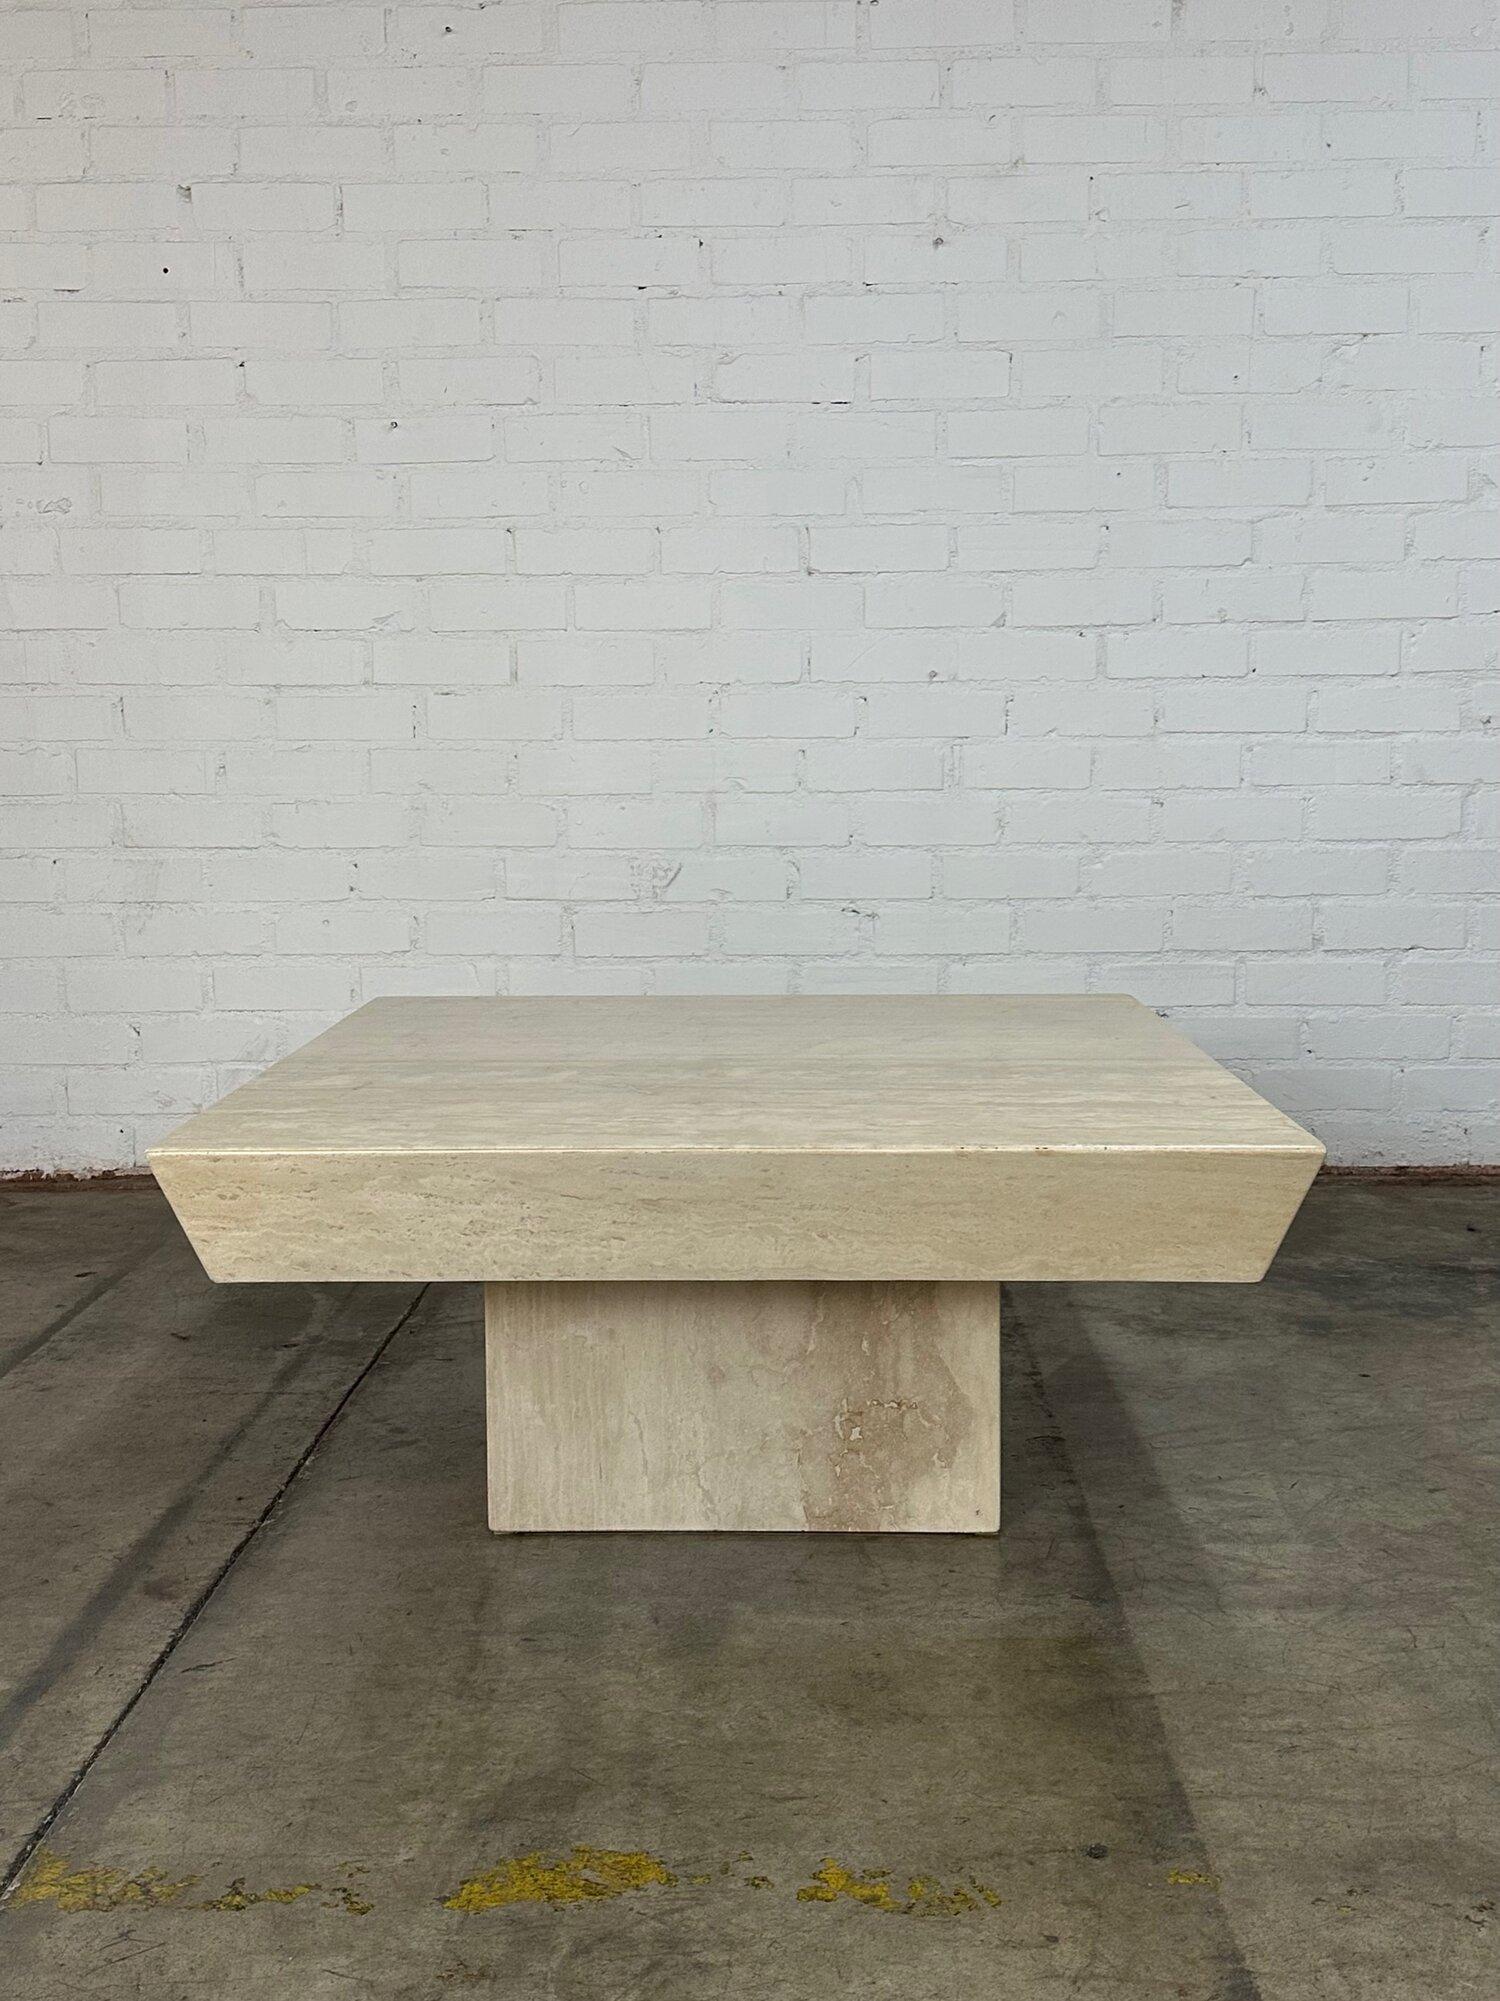 W43.5 H19

Table basse en travertin entièrement restaurée, sans éclats ni cassures. La table présente un plateau carré avec un bord inférieur en biseau. 

vers les années 1970